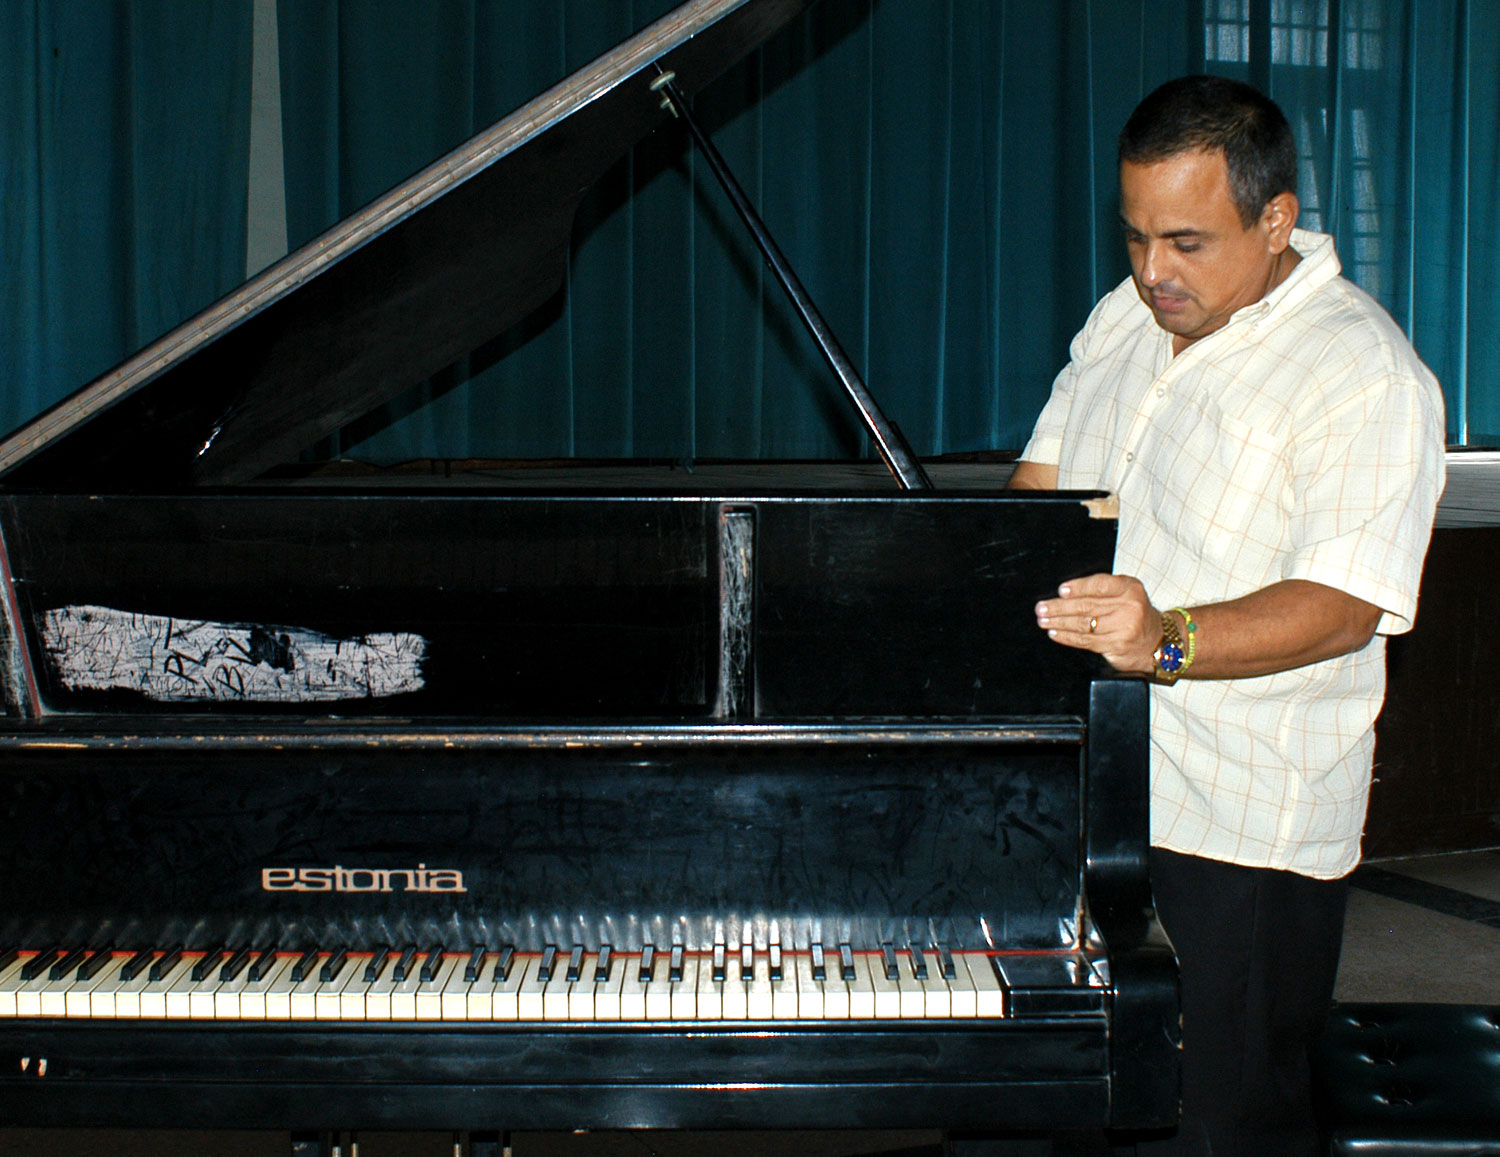 “Esto ha aguantado cantidad, y sigue”, dijo el director del conservatorio mostrando su viejo piano de cola. (Foto: Yasset Yerena)